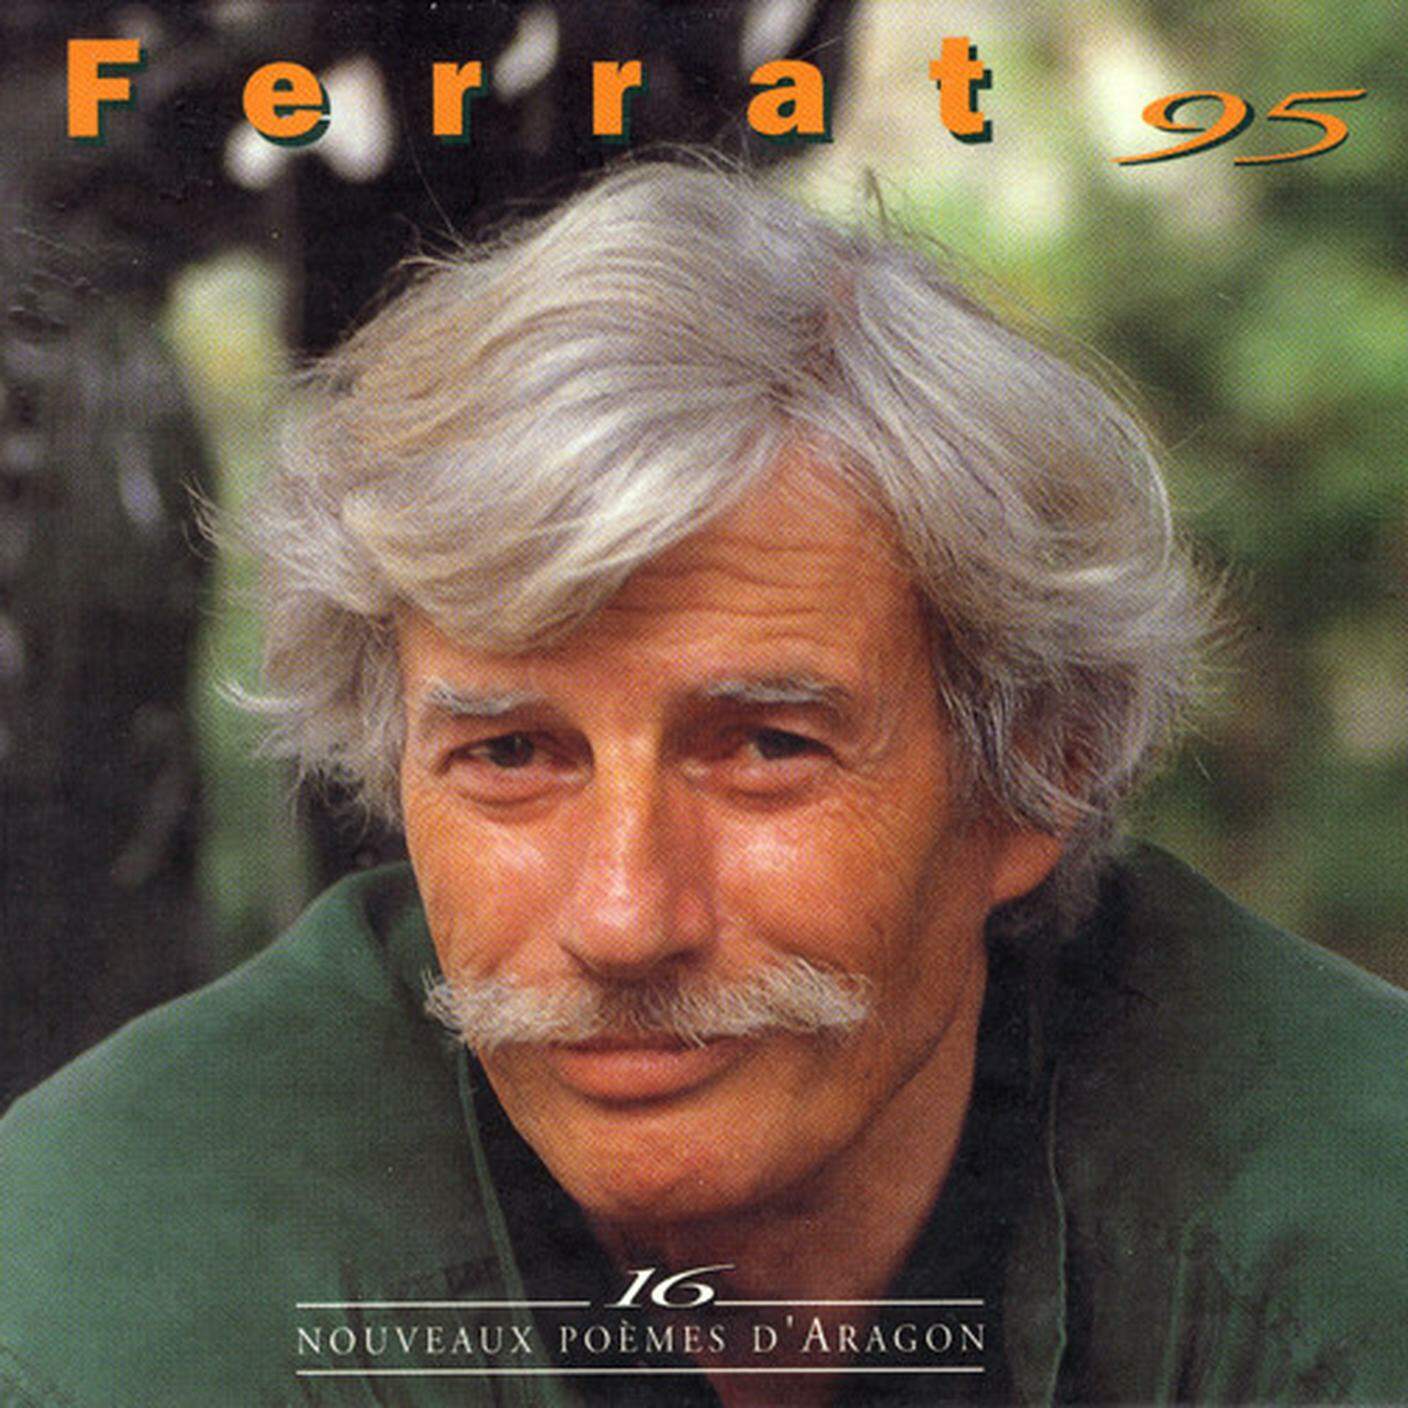 Jean Ferrat, "Ferrat 95", Temey (dettaglio copertina)